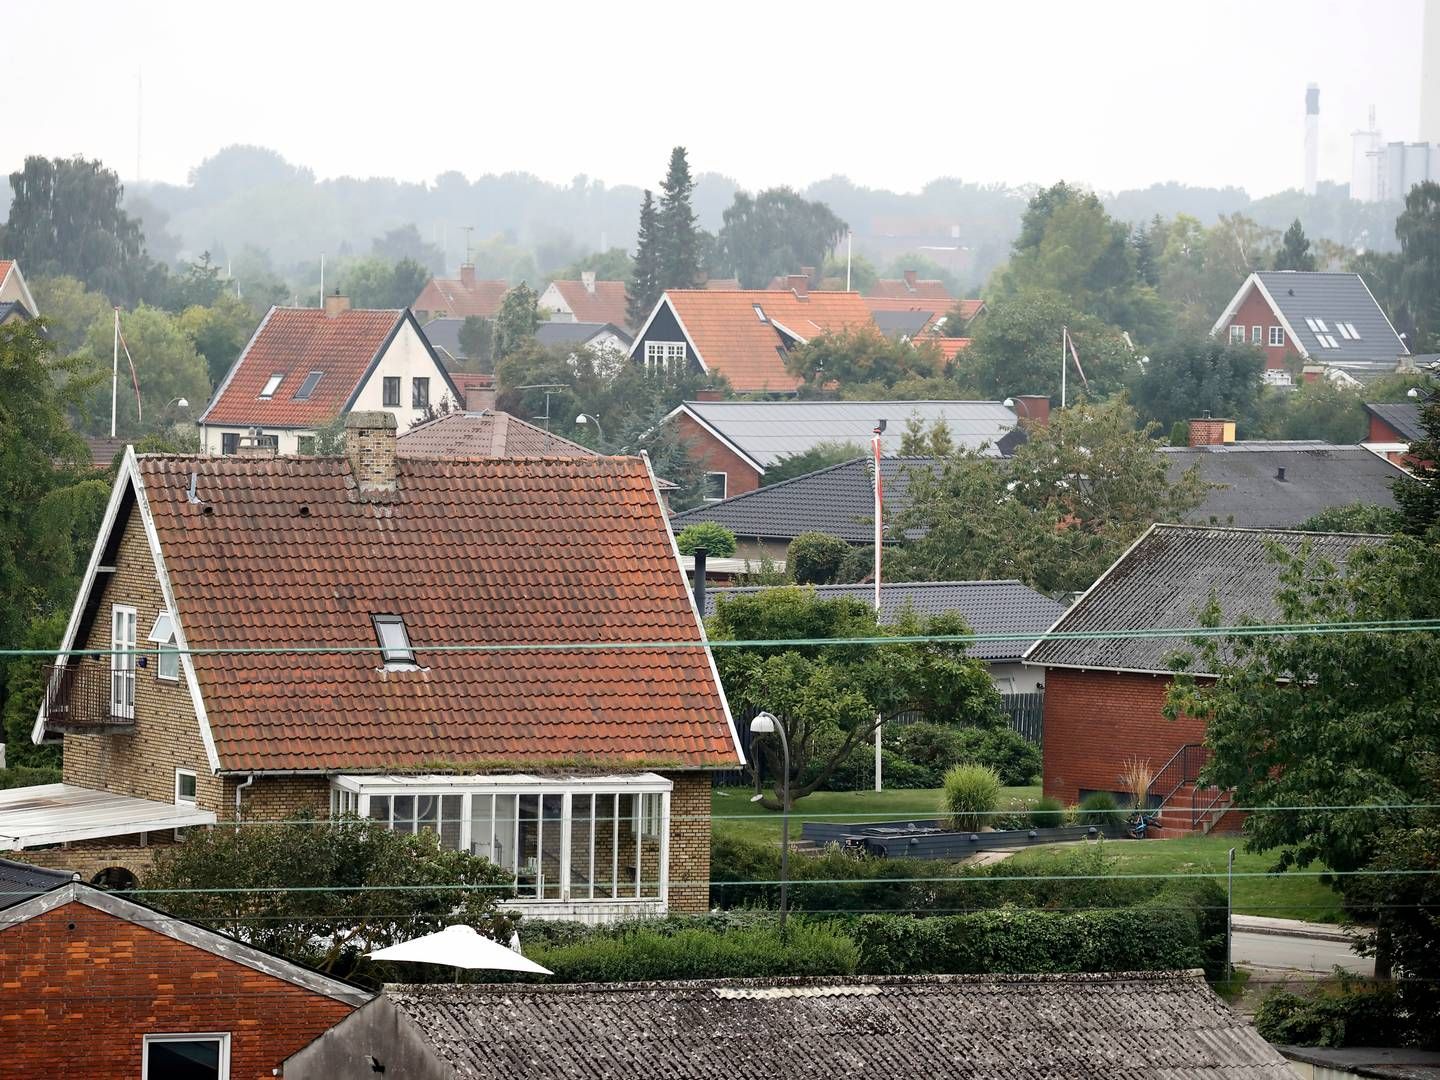 De mange fejl i de foreløbige ejendomsvurderinger, har slået skår i danskernes tillid, viser en ny voxmeter-undersøgelse. | Foto: Jens Dresling